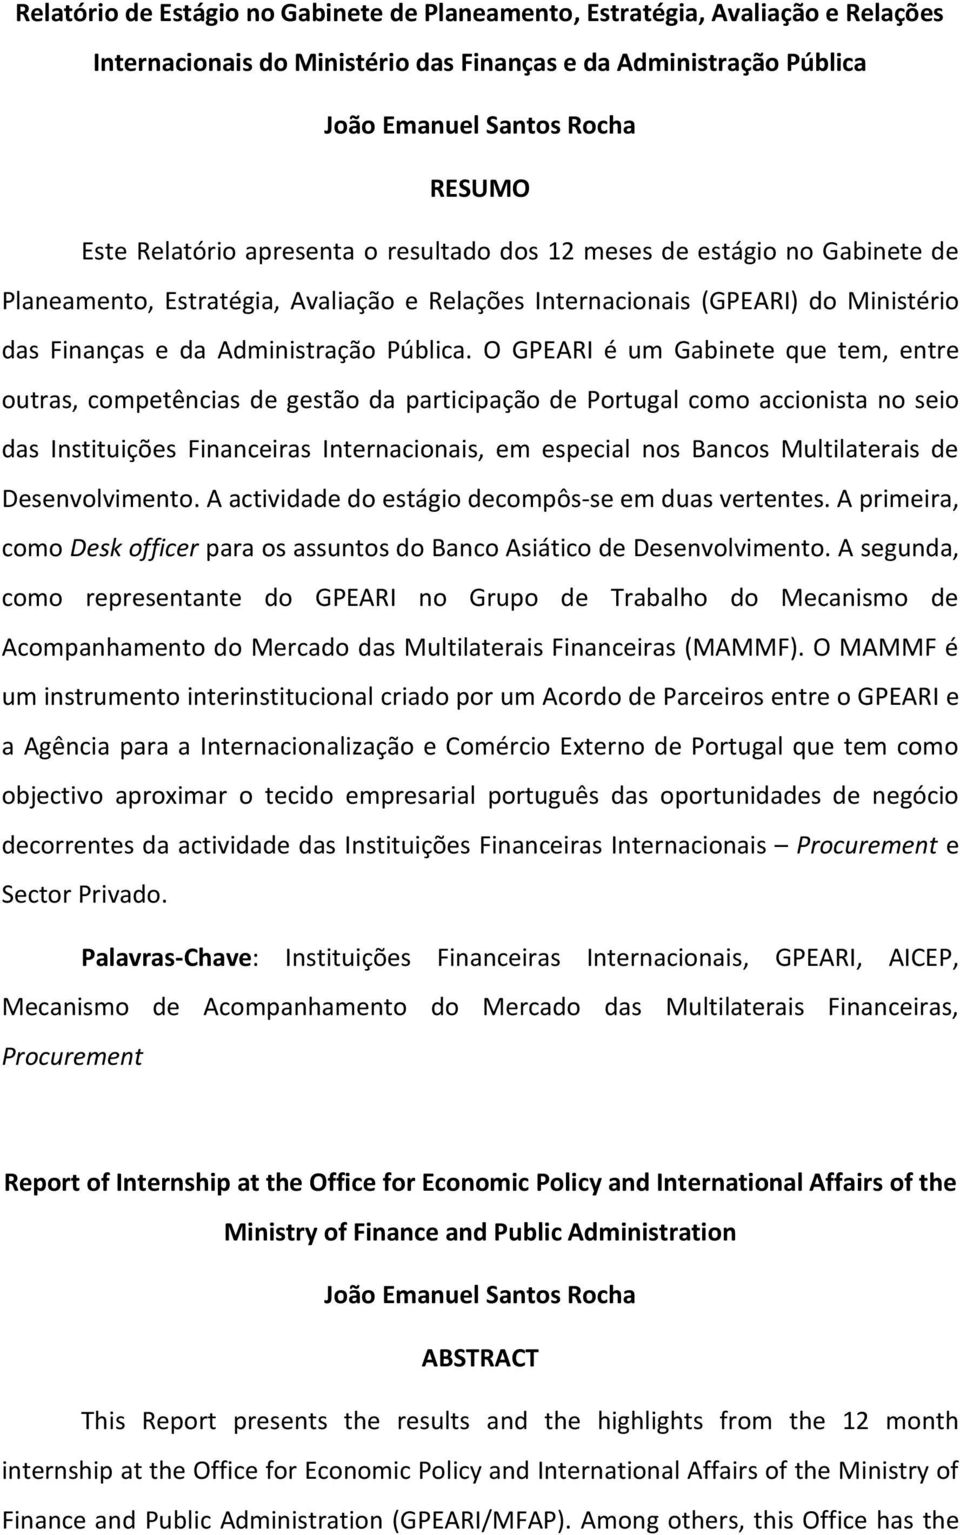 O GPEARI é um Gabinete que tem, entre outras, competências de gestão da participação de Portugal como accionista no seio das Instituições Financeiras Internacionais, em especial nos Bancos